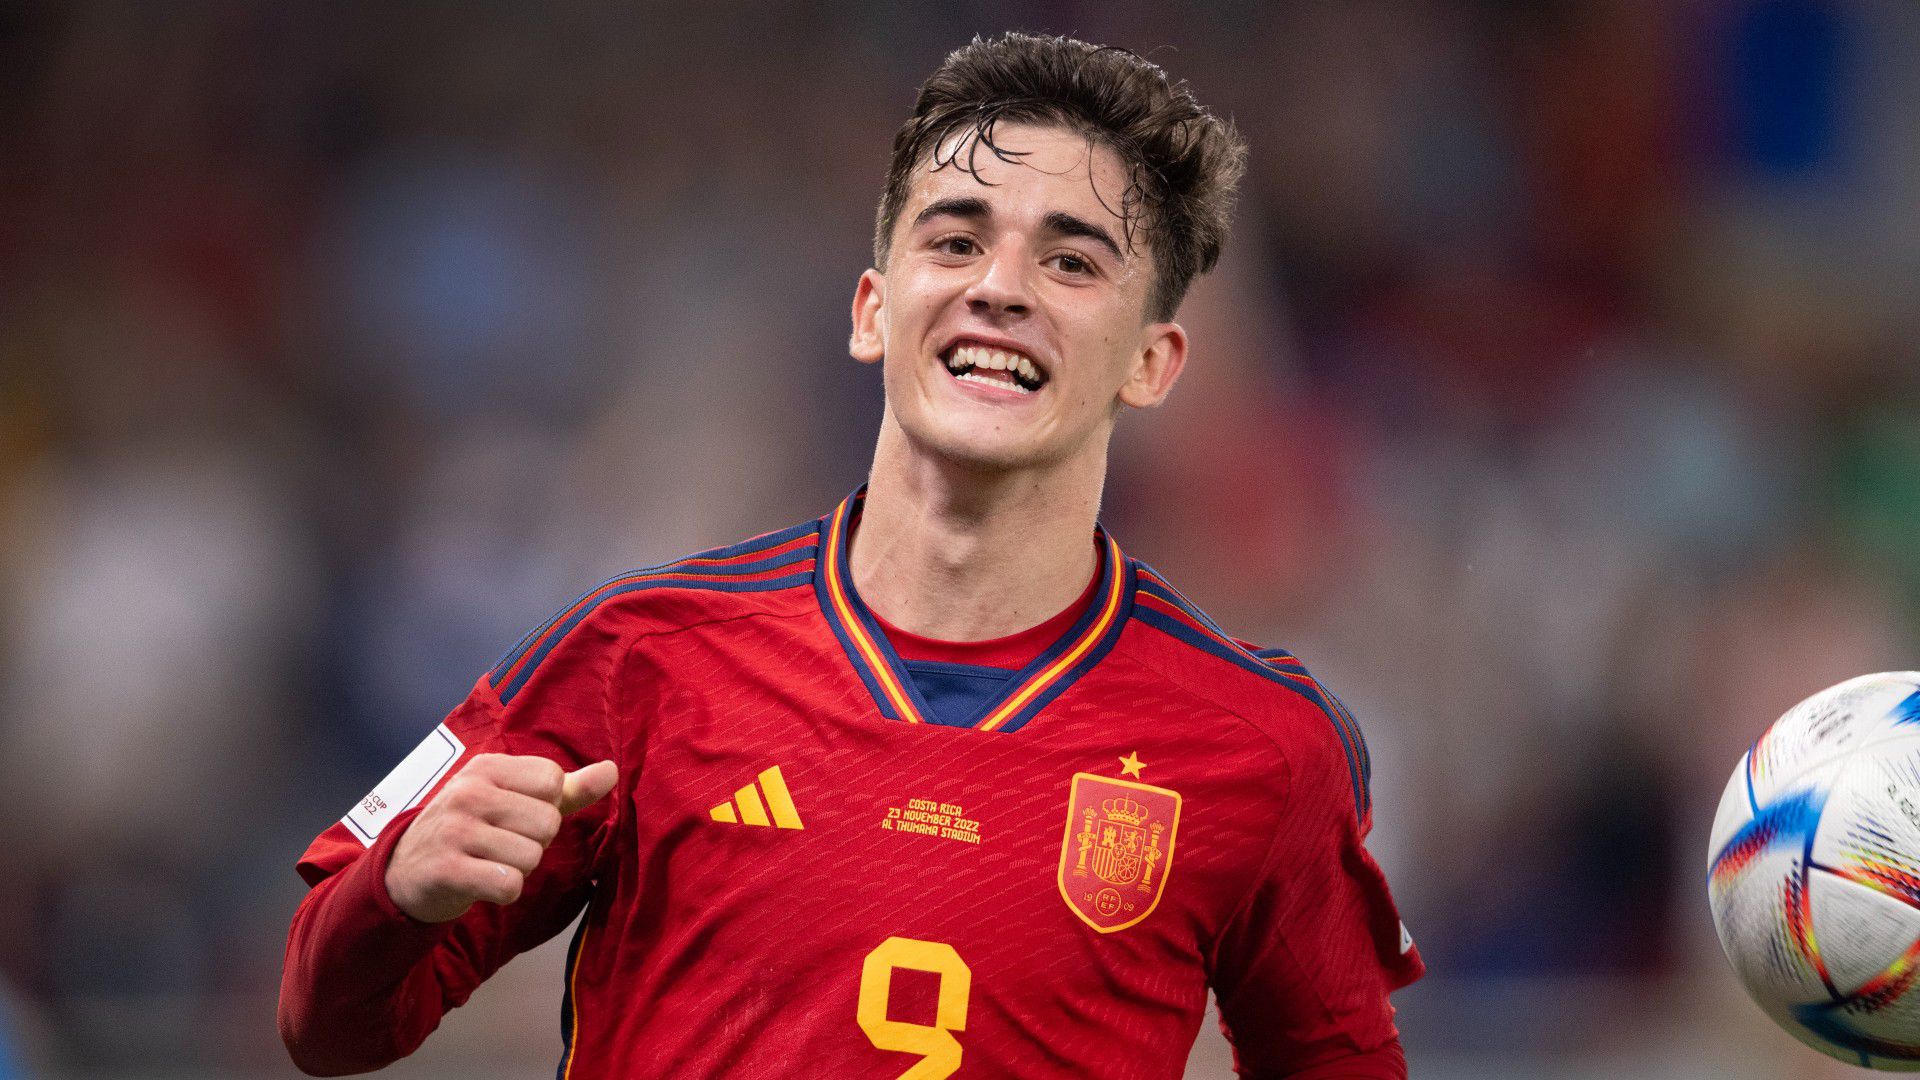 Rögtön az első vb-fellépésén a meccs emberének választották a spanyol fiatalt